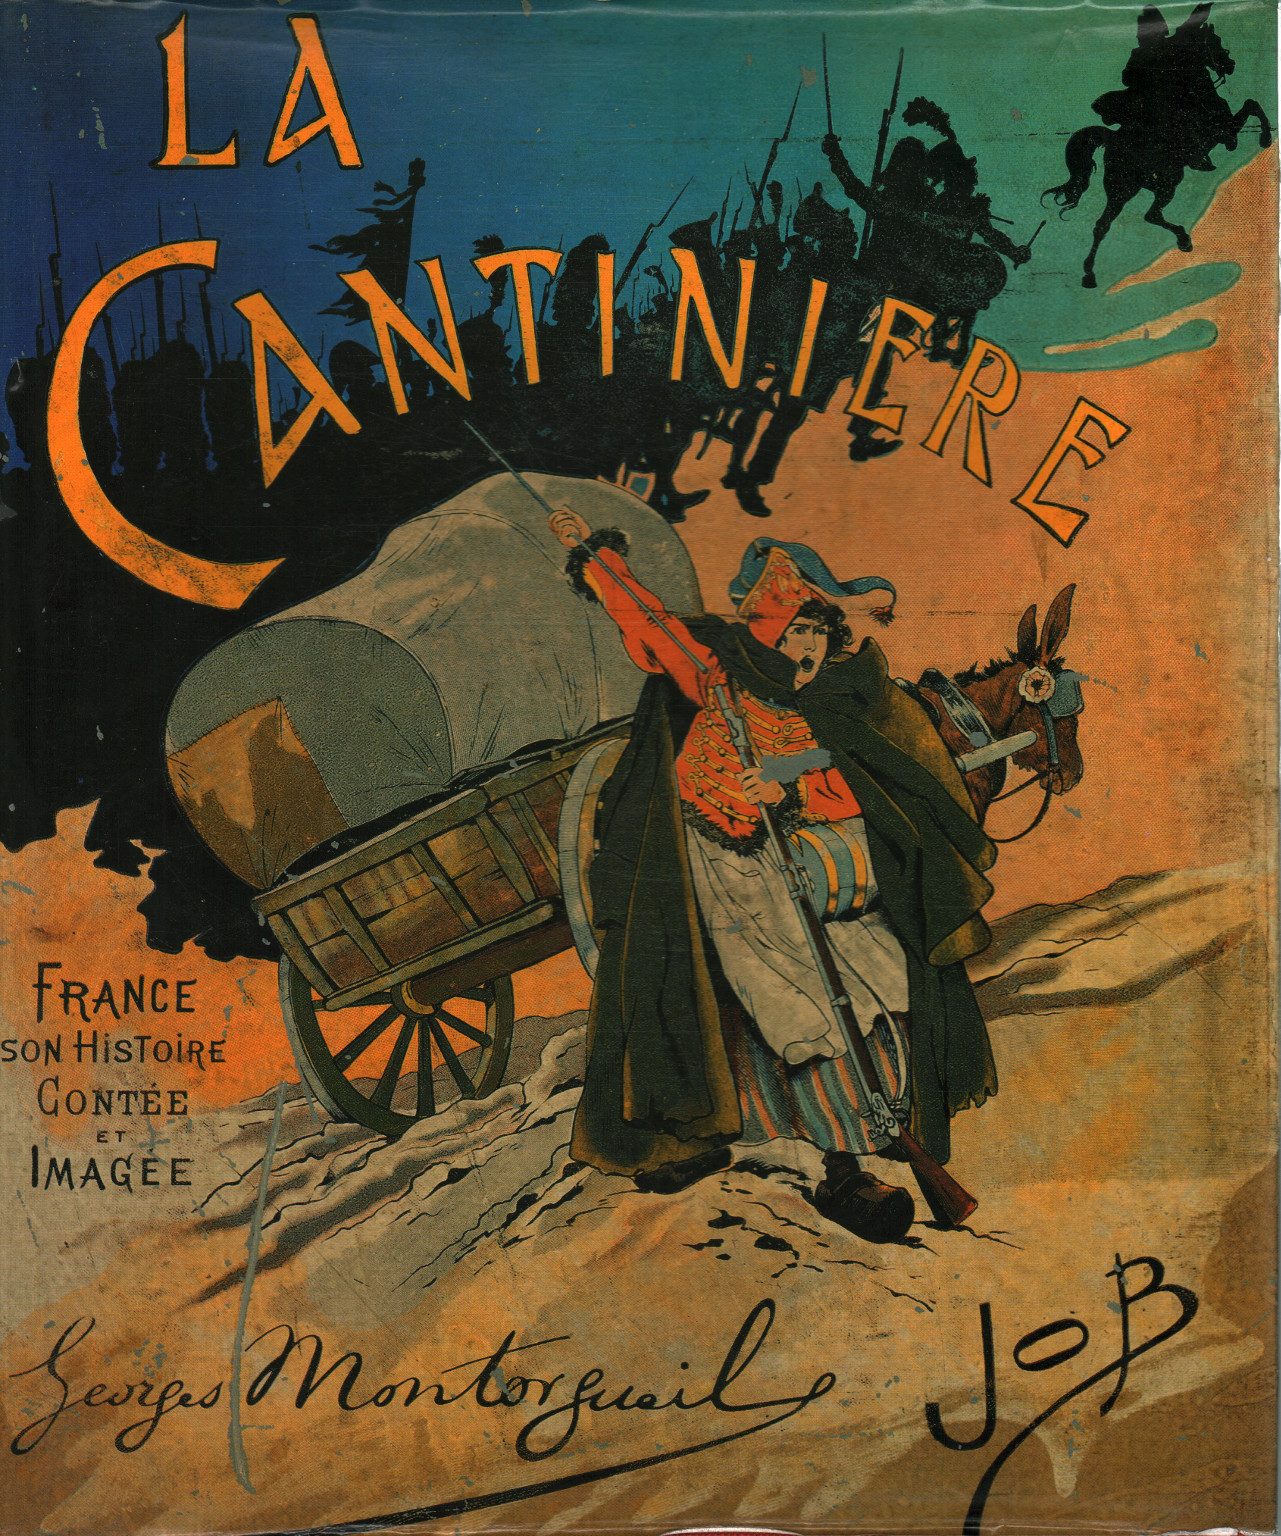 La cantinière. France son histoire, G. Montorgueil